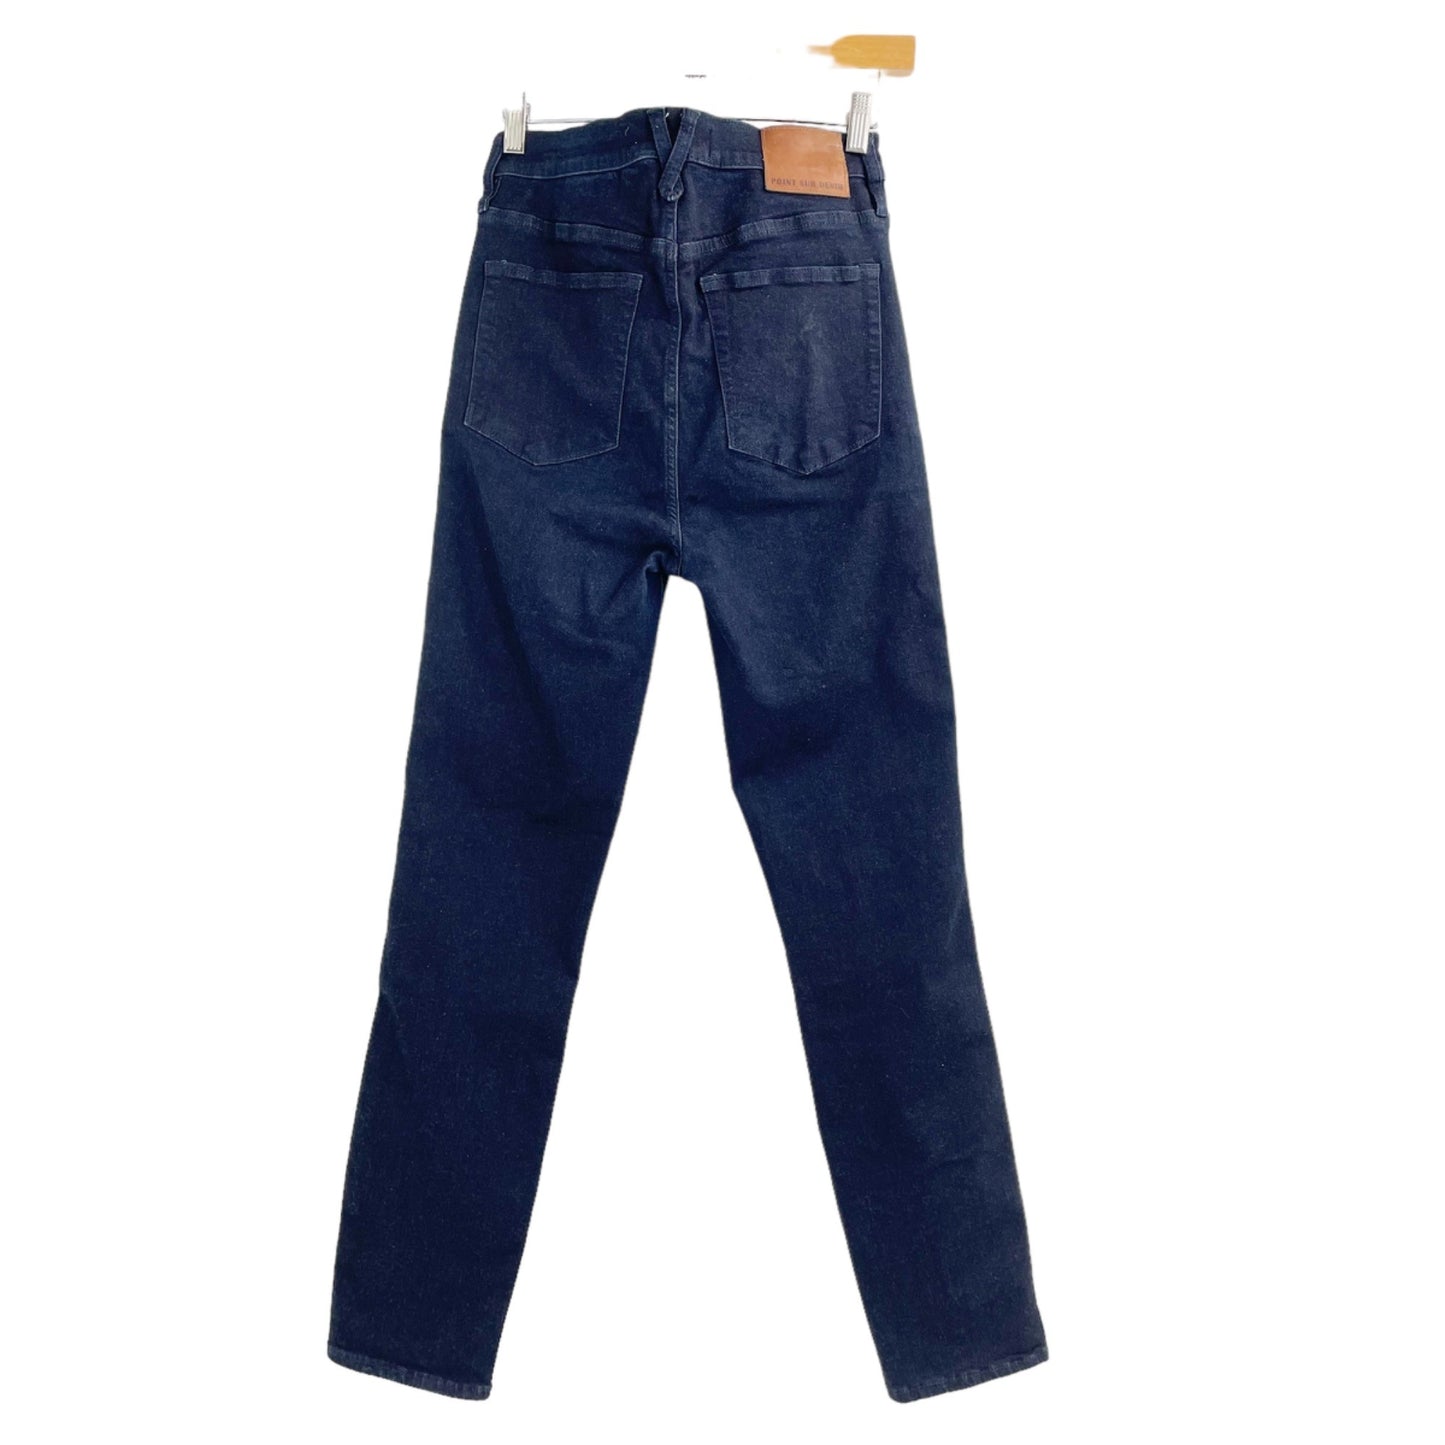 Point Sur Denim 10" Hightower Straight Jeans Womens Size 28 Dark Wash Stretch